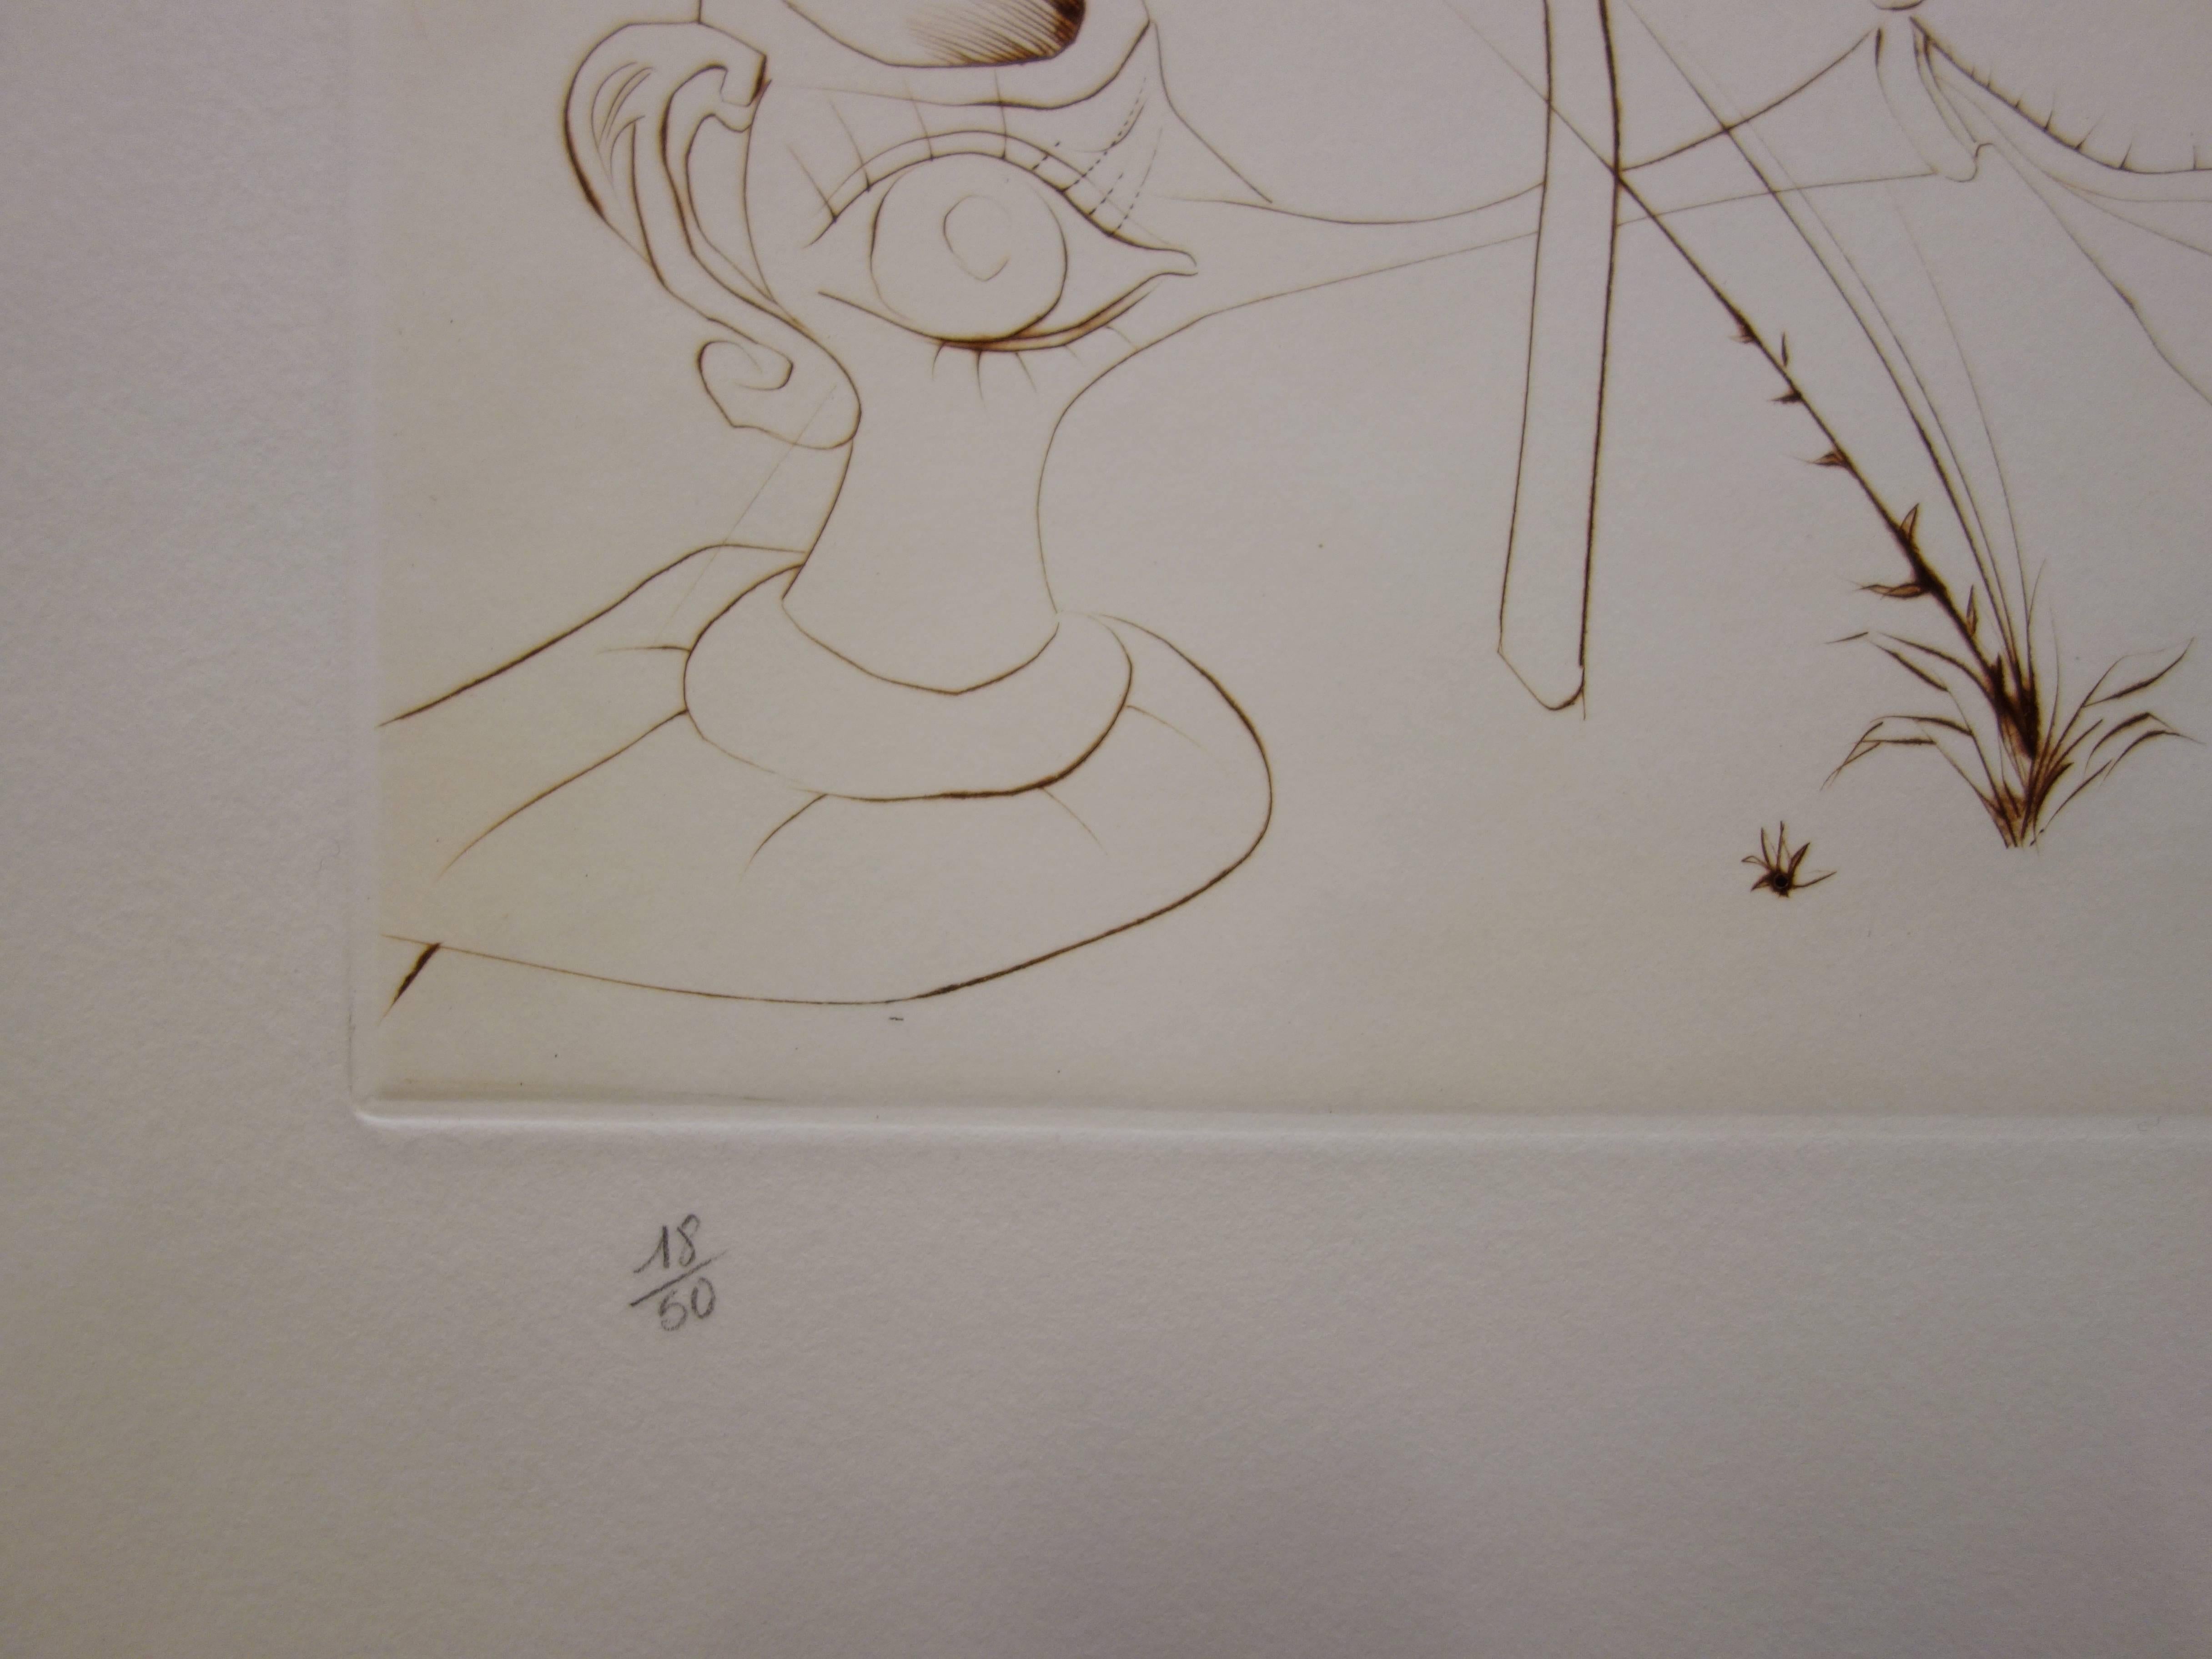 L'Alchimie - Original etching - 1972 - 50 exem - Surrealist Print by Salvador Dalí